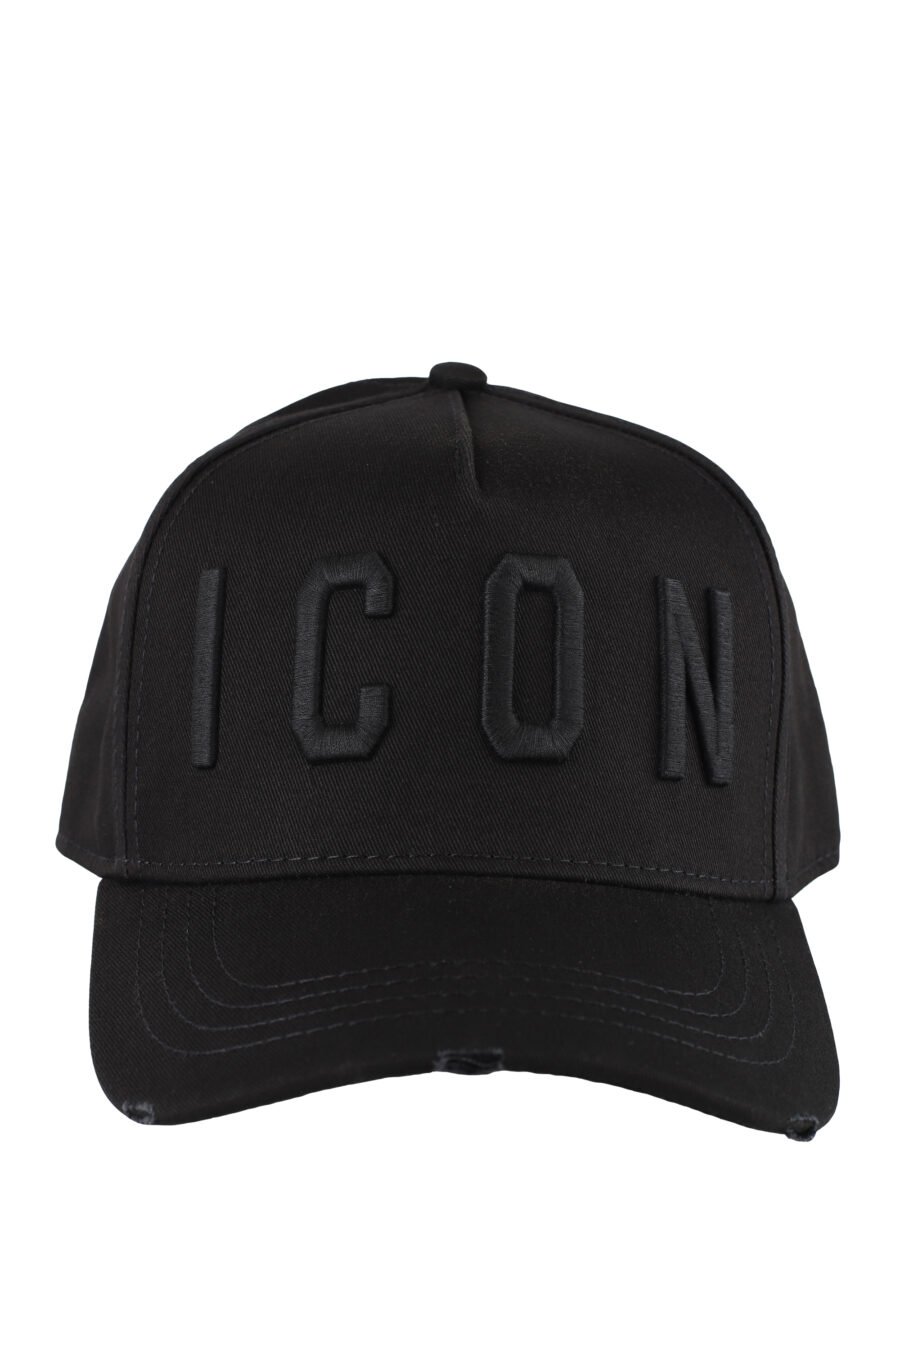 Casquette noire avec logo "icon" monochrome - IMG 5164